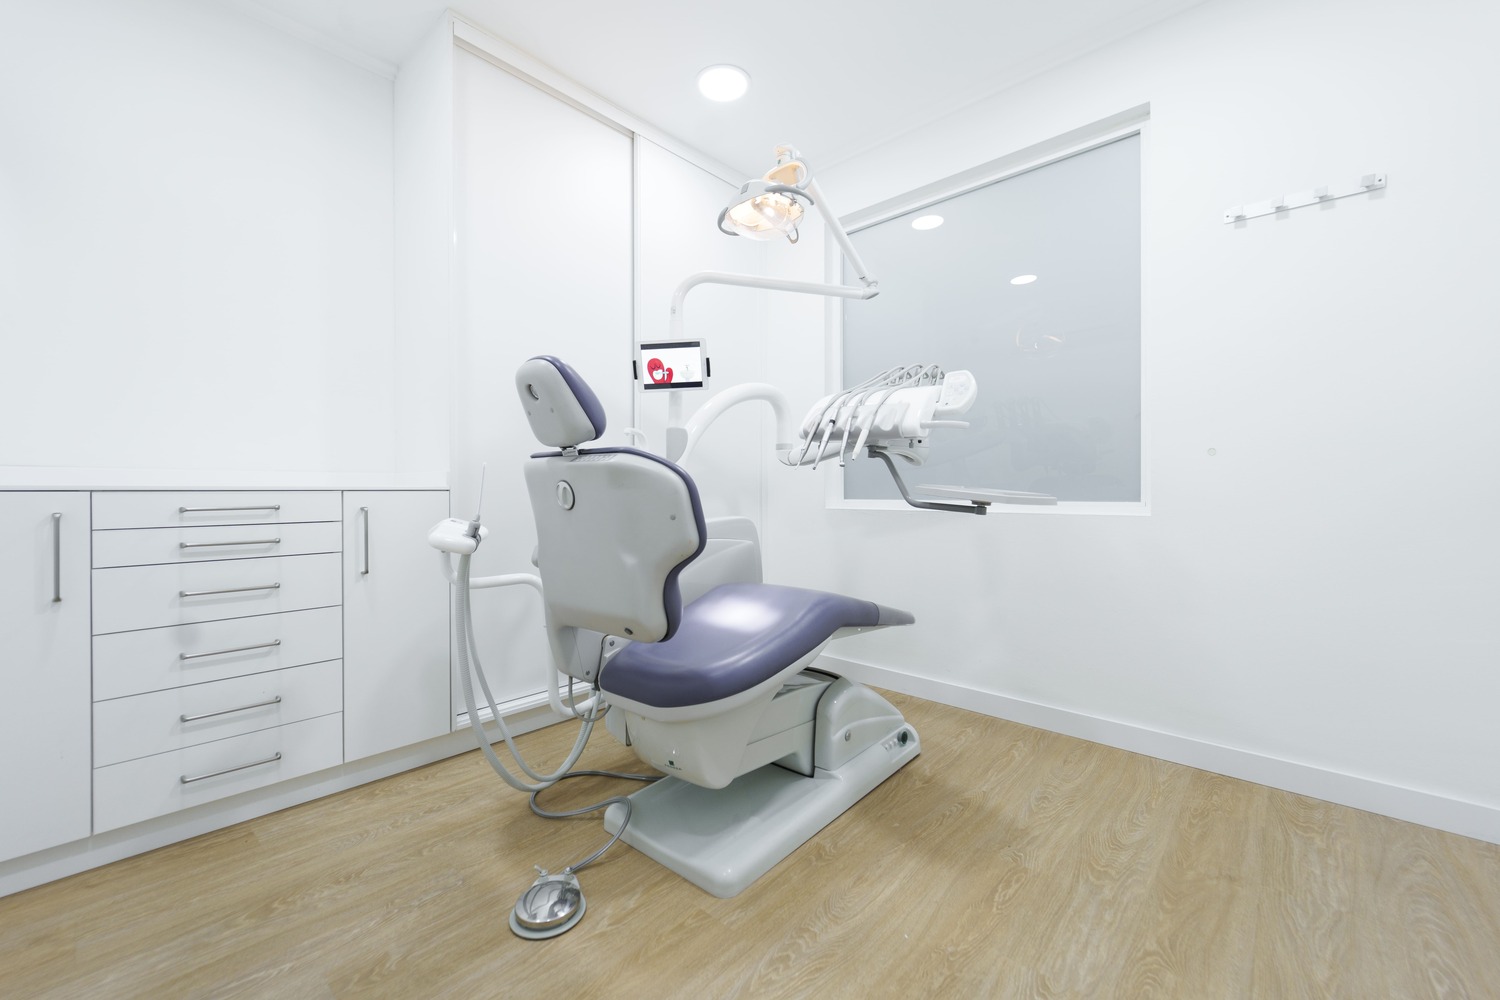 sala dental clinica rocio mompo